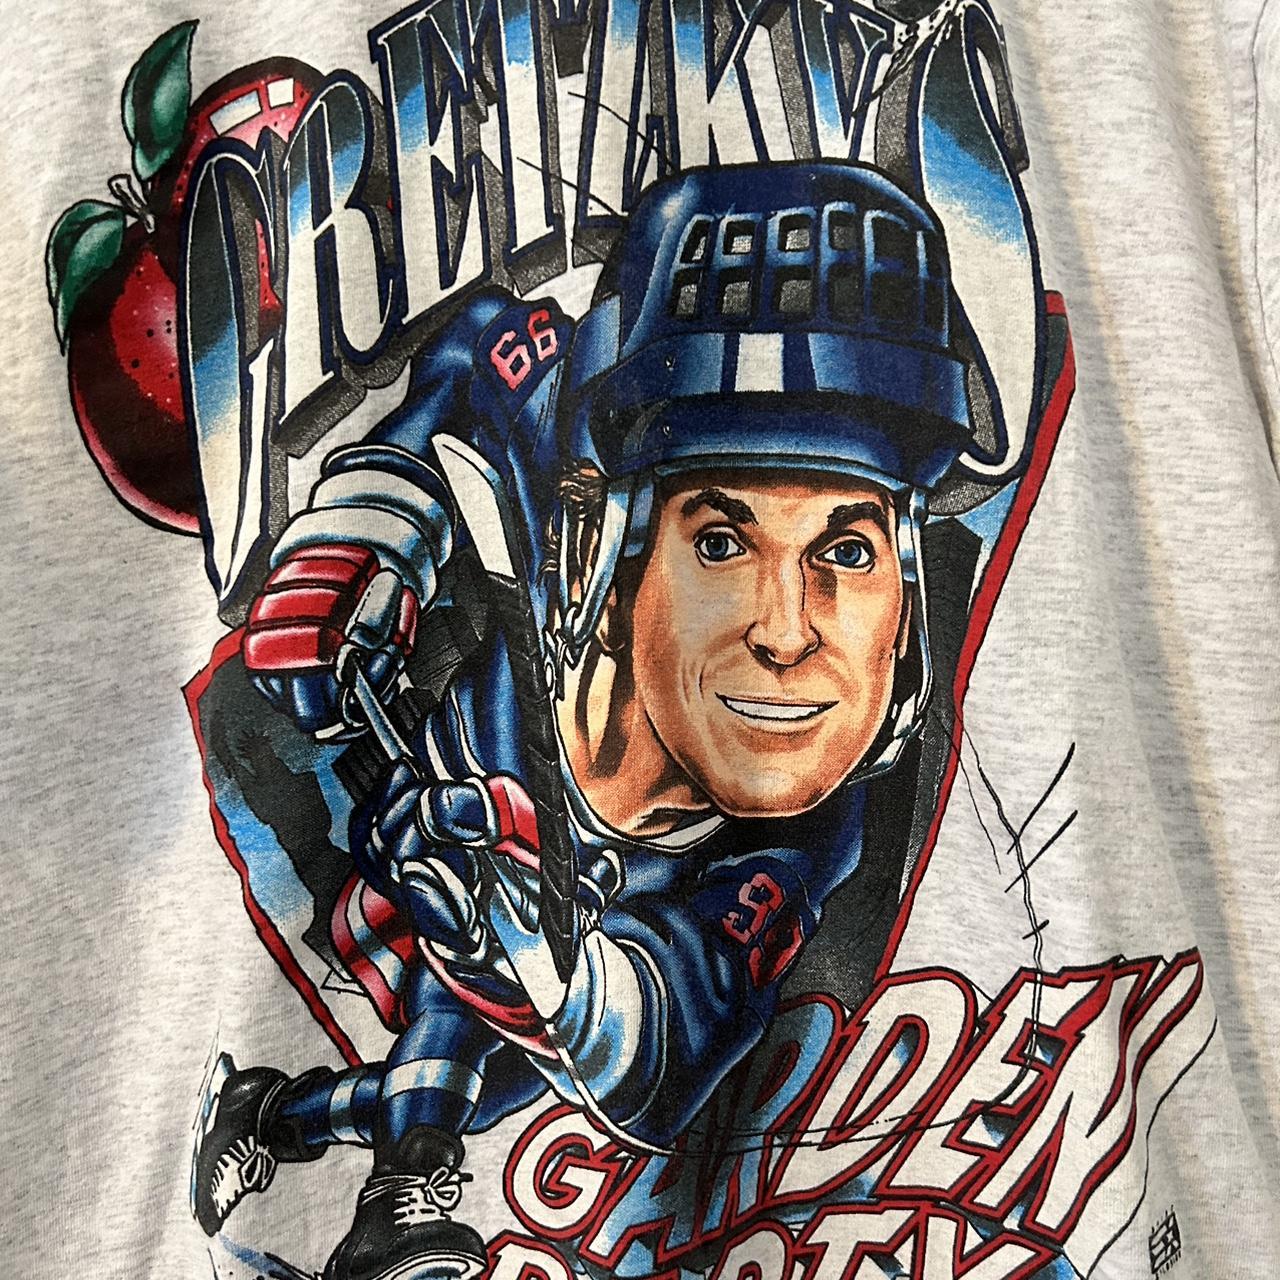 Vintage 90s Wayne Gretzky Liberty New York Rangers - Depop